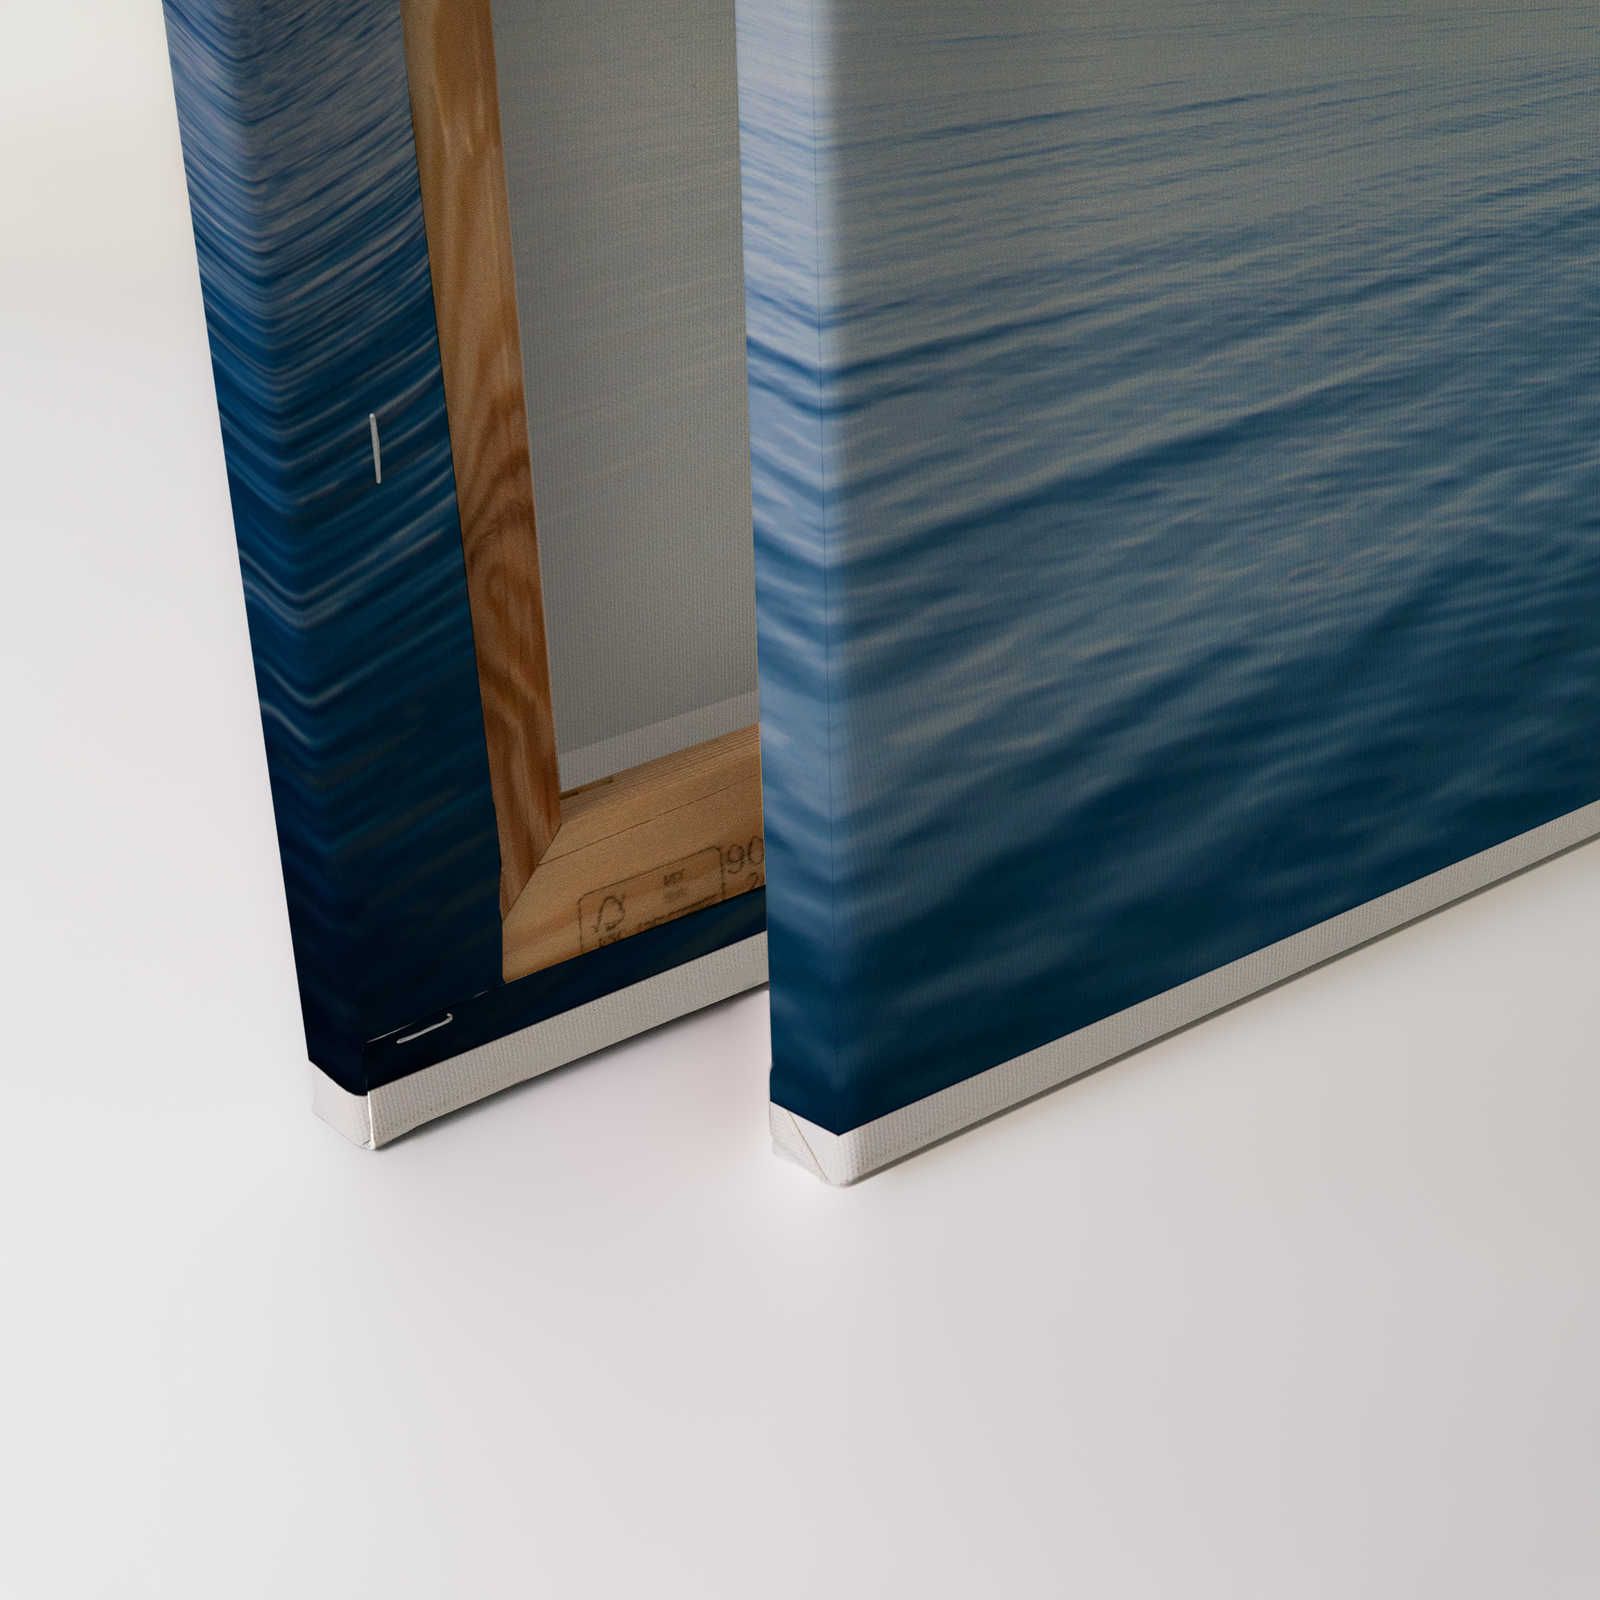             Canvas schilderij open zee met wolken - 1,20 m x 0,80 m
        